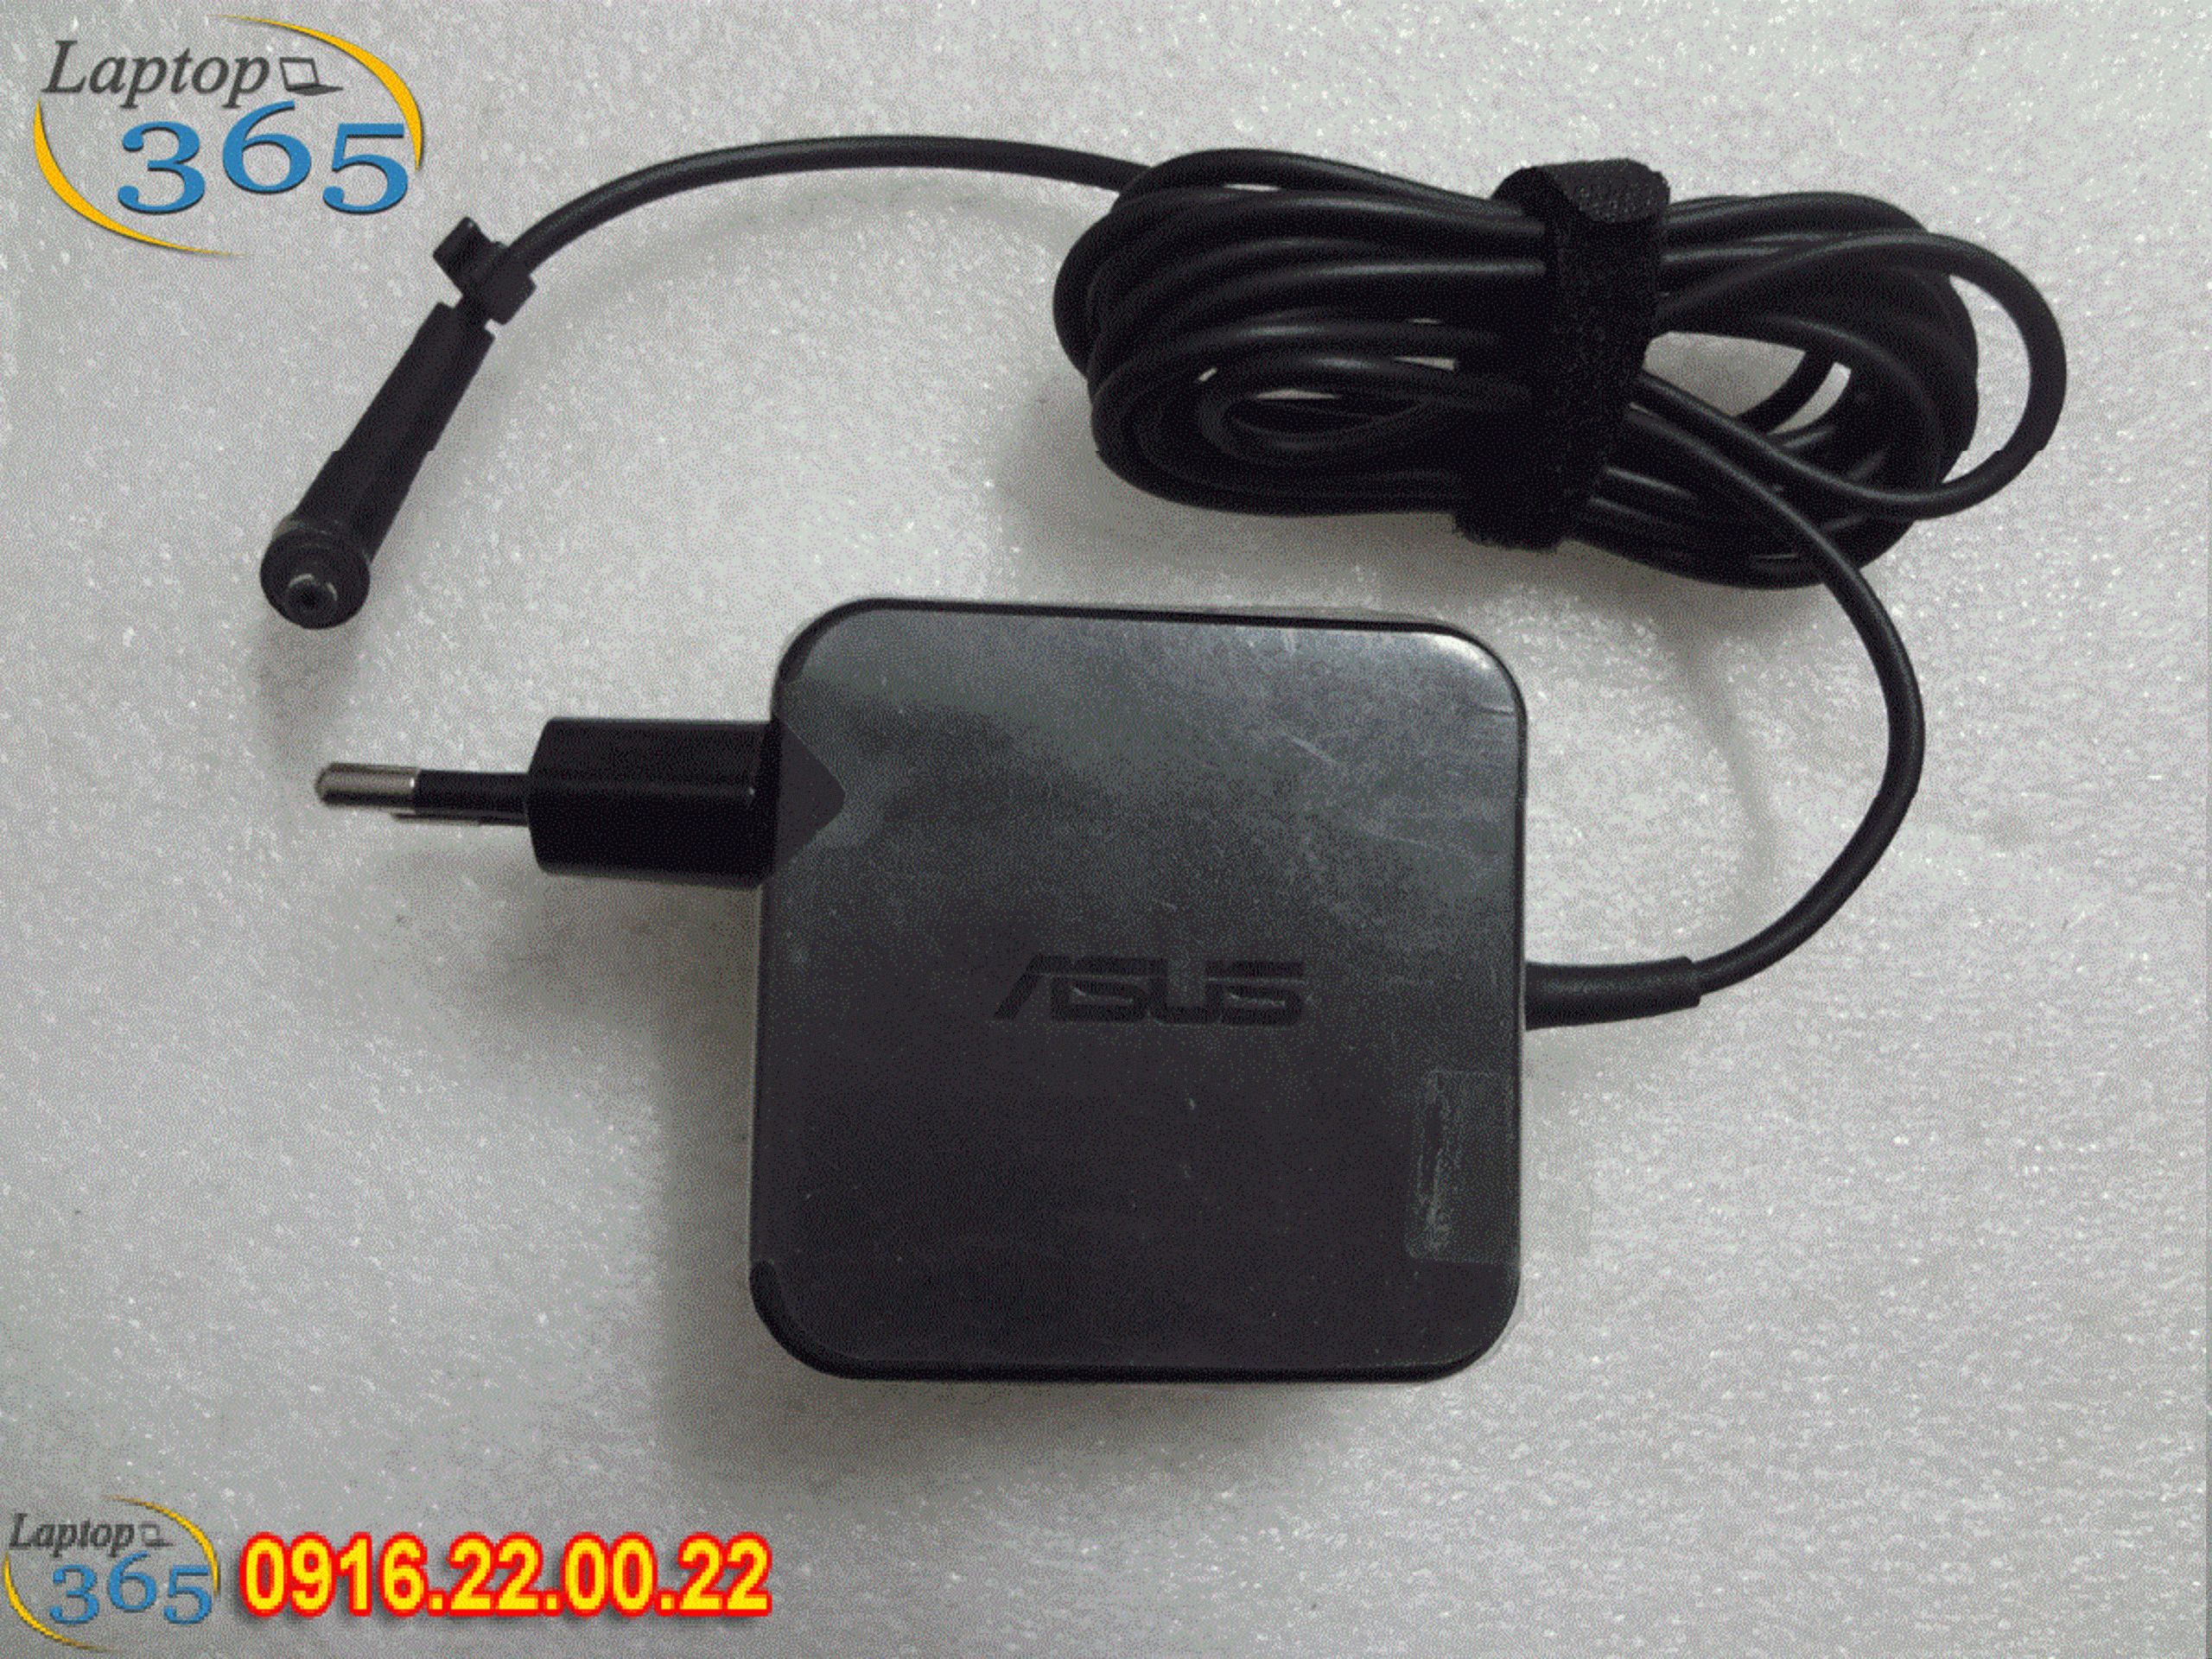 Sạc laptop Asus Zenbook Q507 Q507i Q507IQ